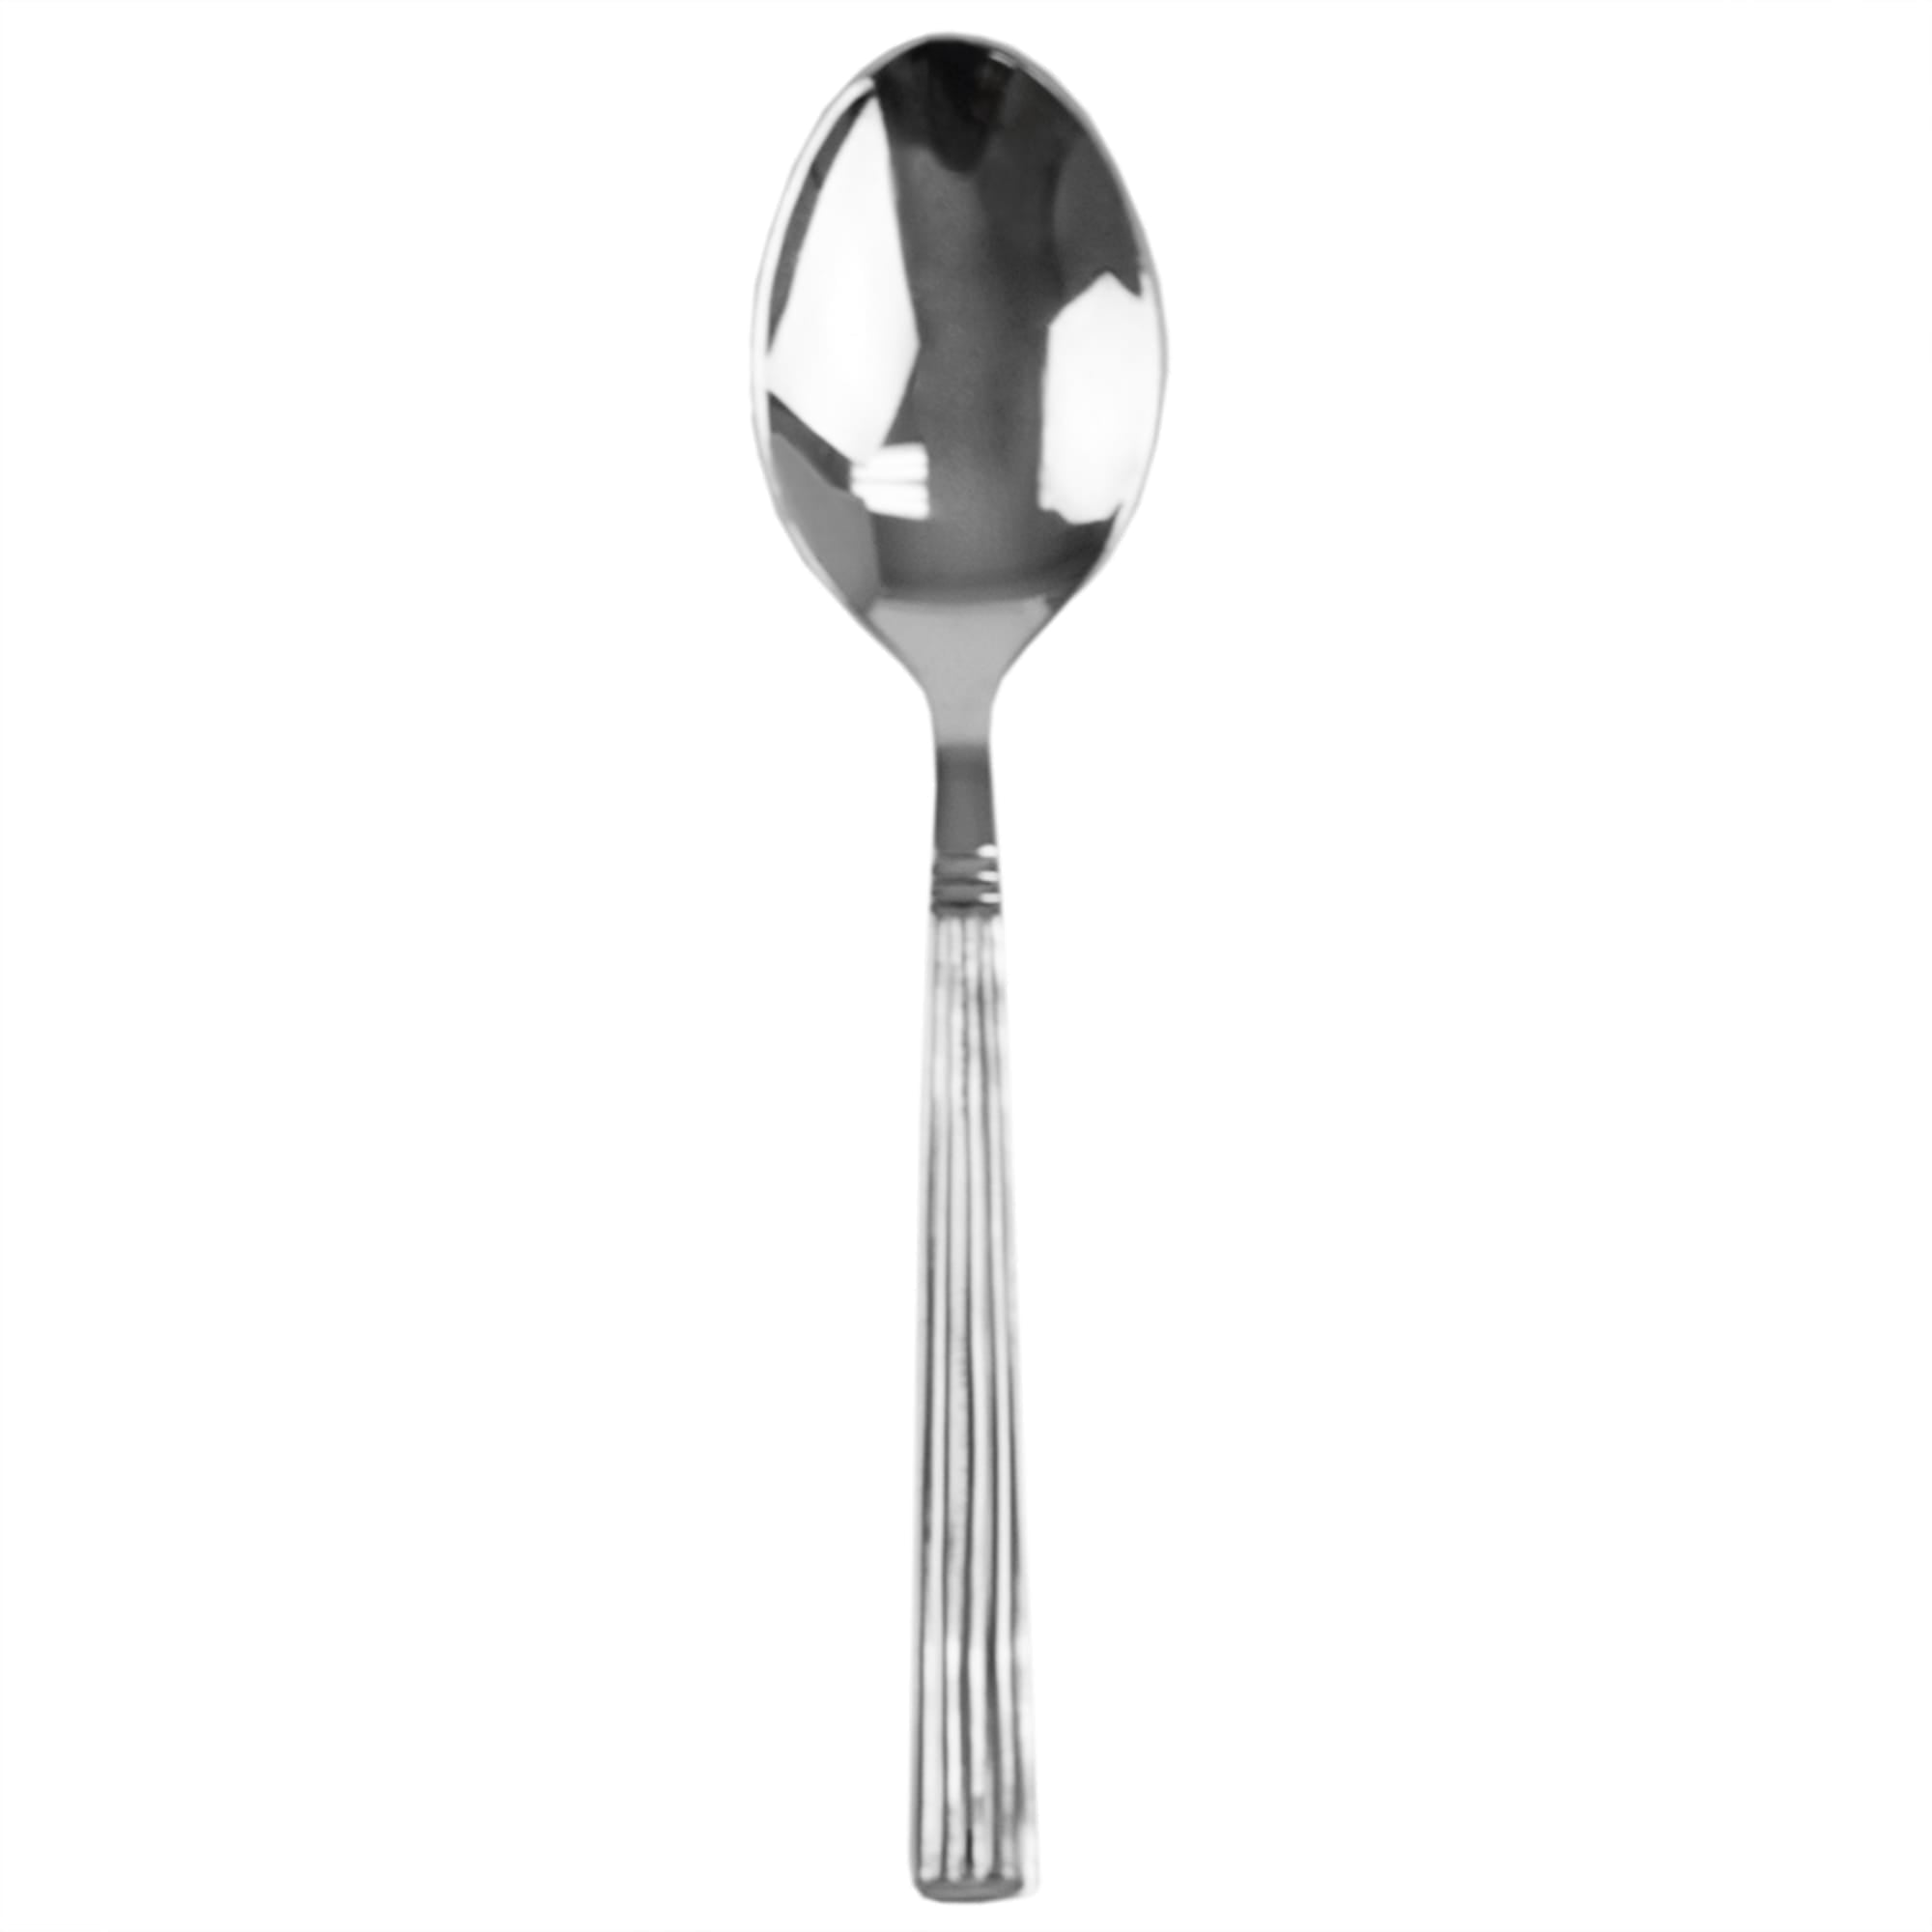 Silver 4-Piece Dinner Spoon Set - Mirror Finish Stainless Steel Flatware Dinner Utensils, Essential Kitchen Cutlery Set, Dishwasher Safe $2.00 EACH, CASE PACK OF 24